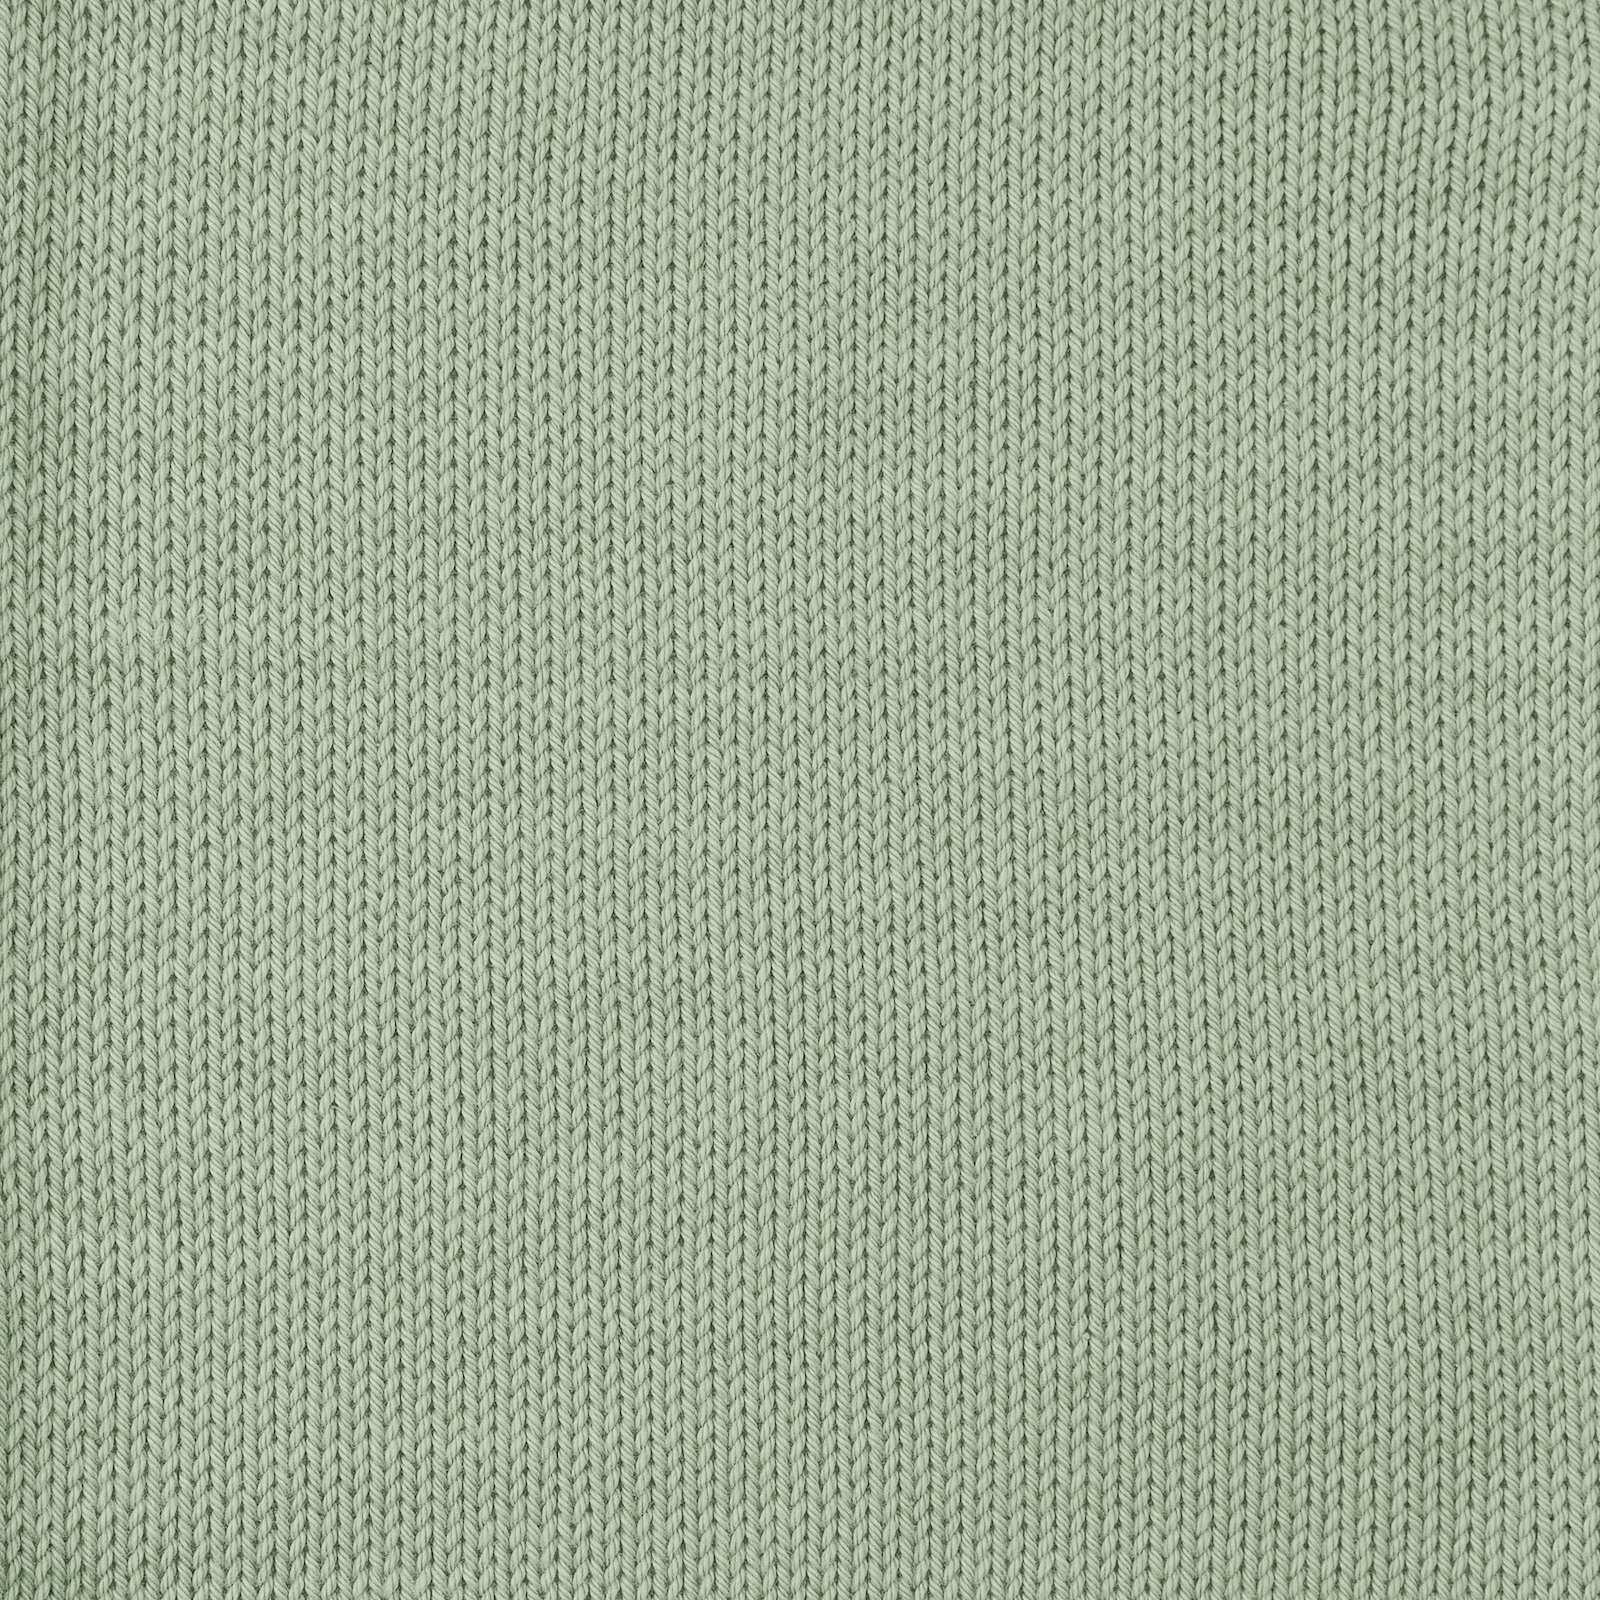 FRAYA, 100% cotton 8/4  yarn  "Colourful", blue agave 90060090_sskit